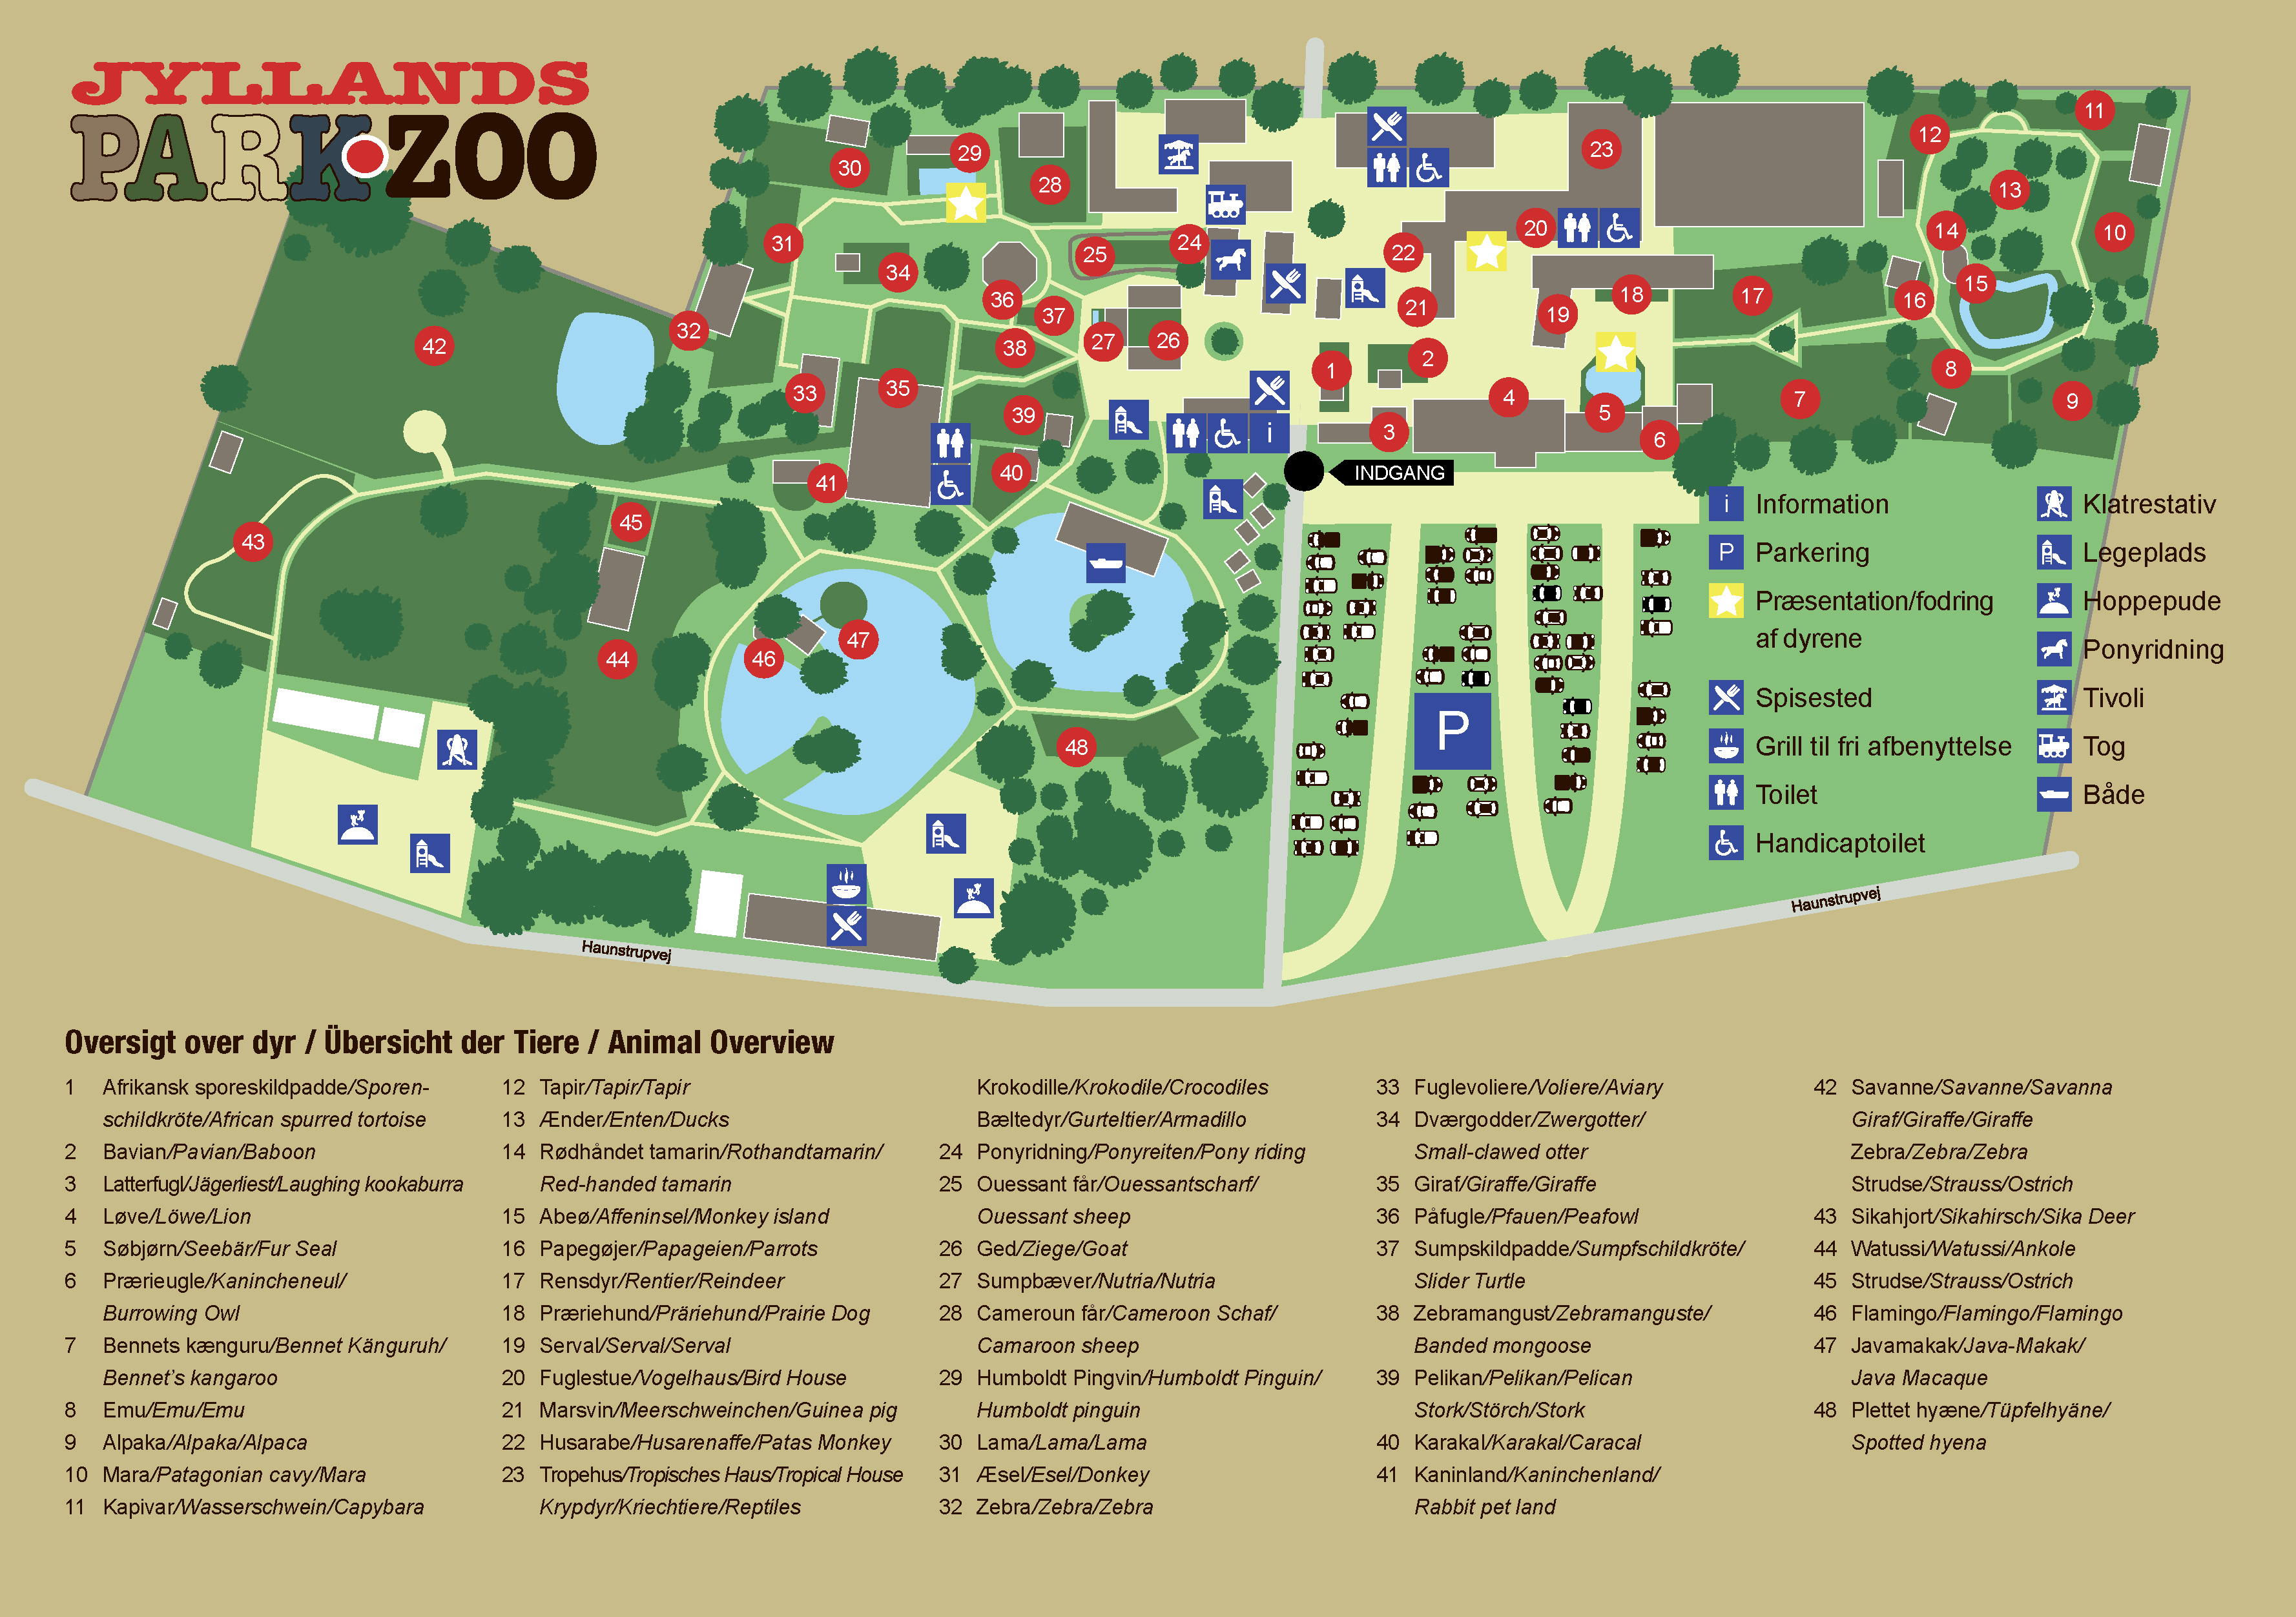 Jyllands Park Zoo - Oversigtskort 2020